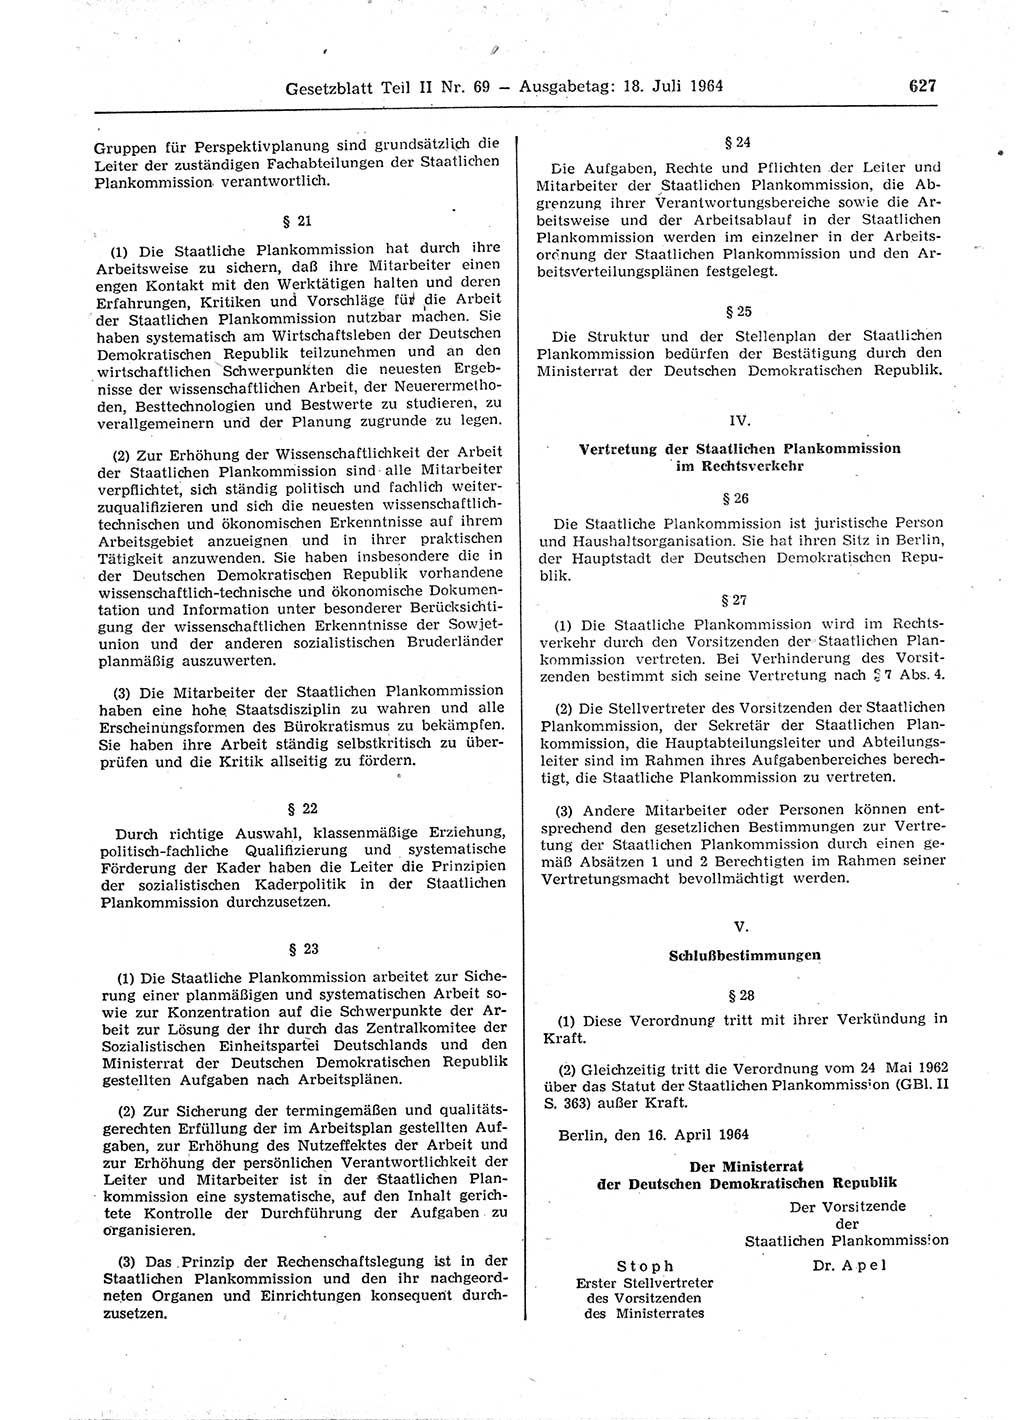 Gesetzblatt (GBl.) der Deutschen Demokratischen Republik (DDR) Teil ⅠⅠ 1964, Seite 627 (GBl. DDR ⅠⅠ 1964, S. 627)